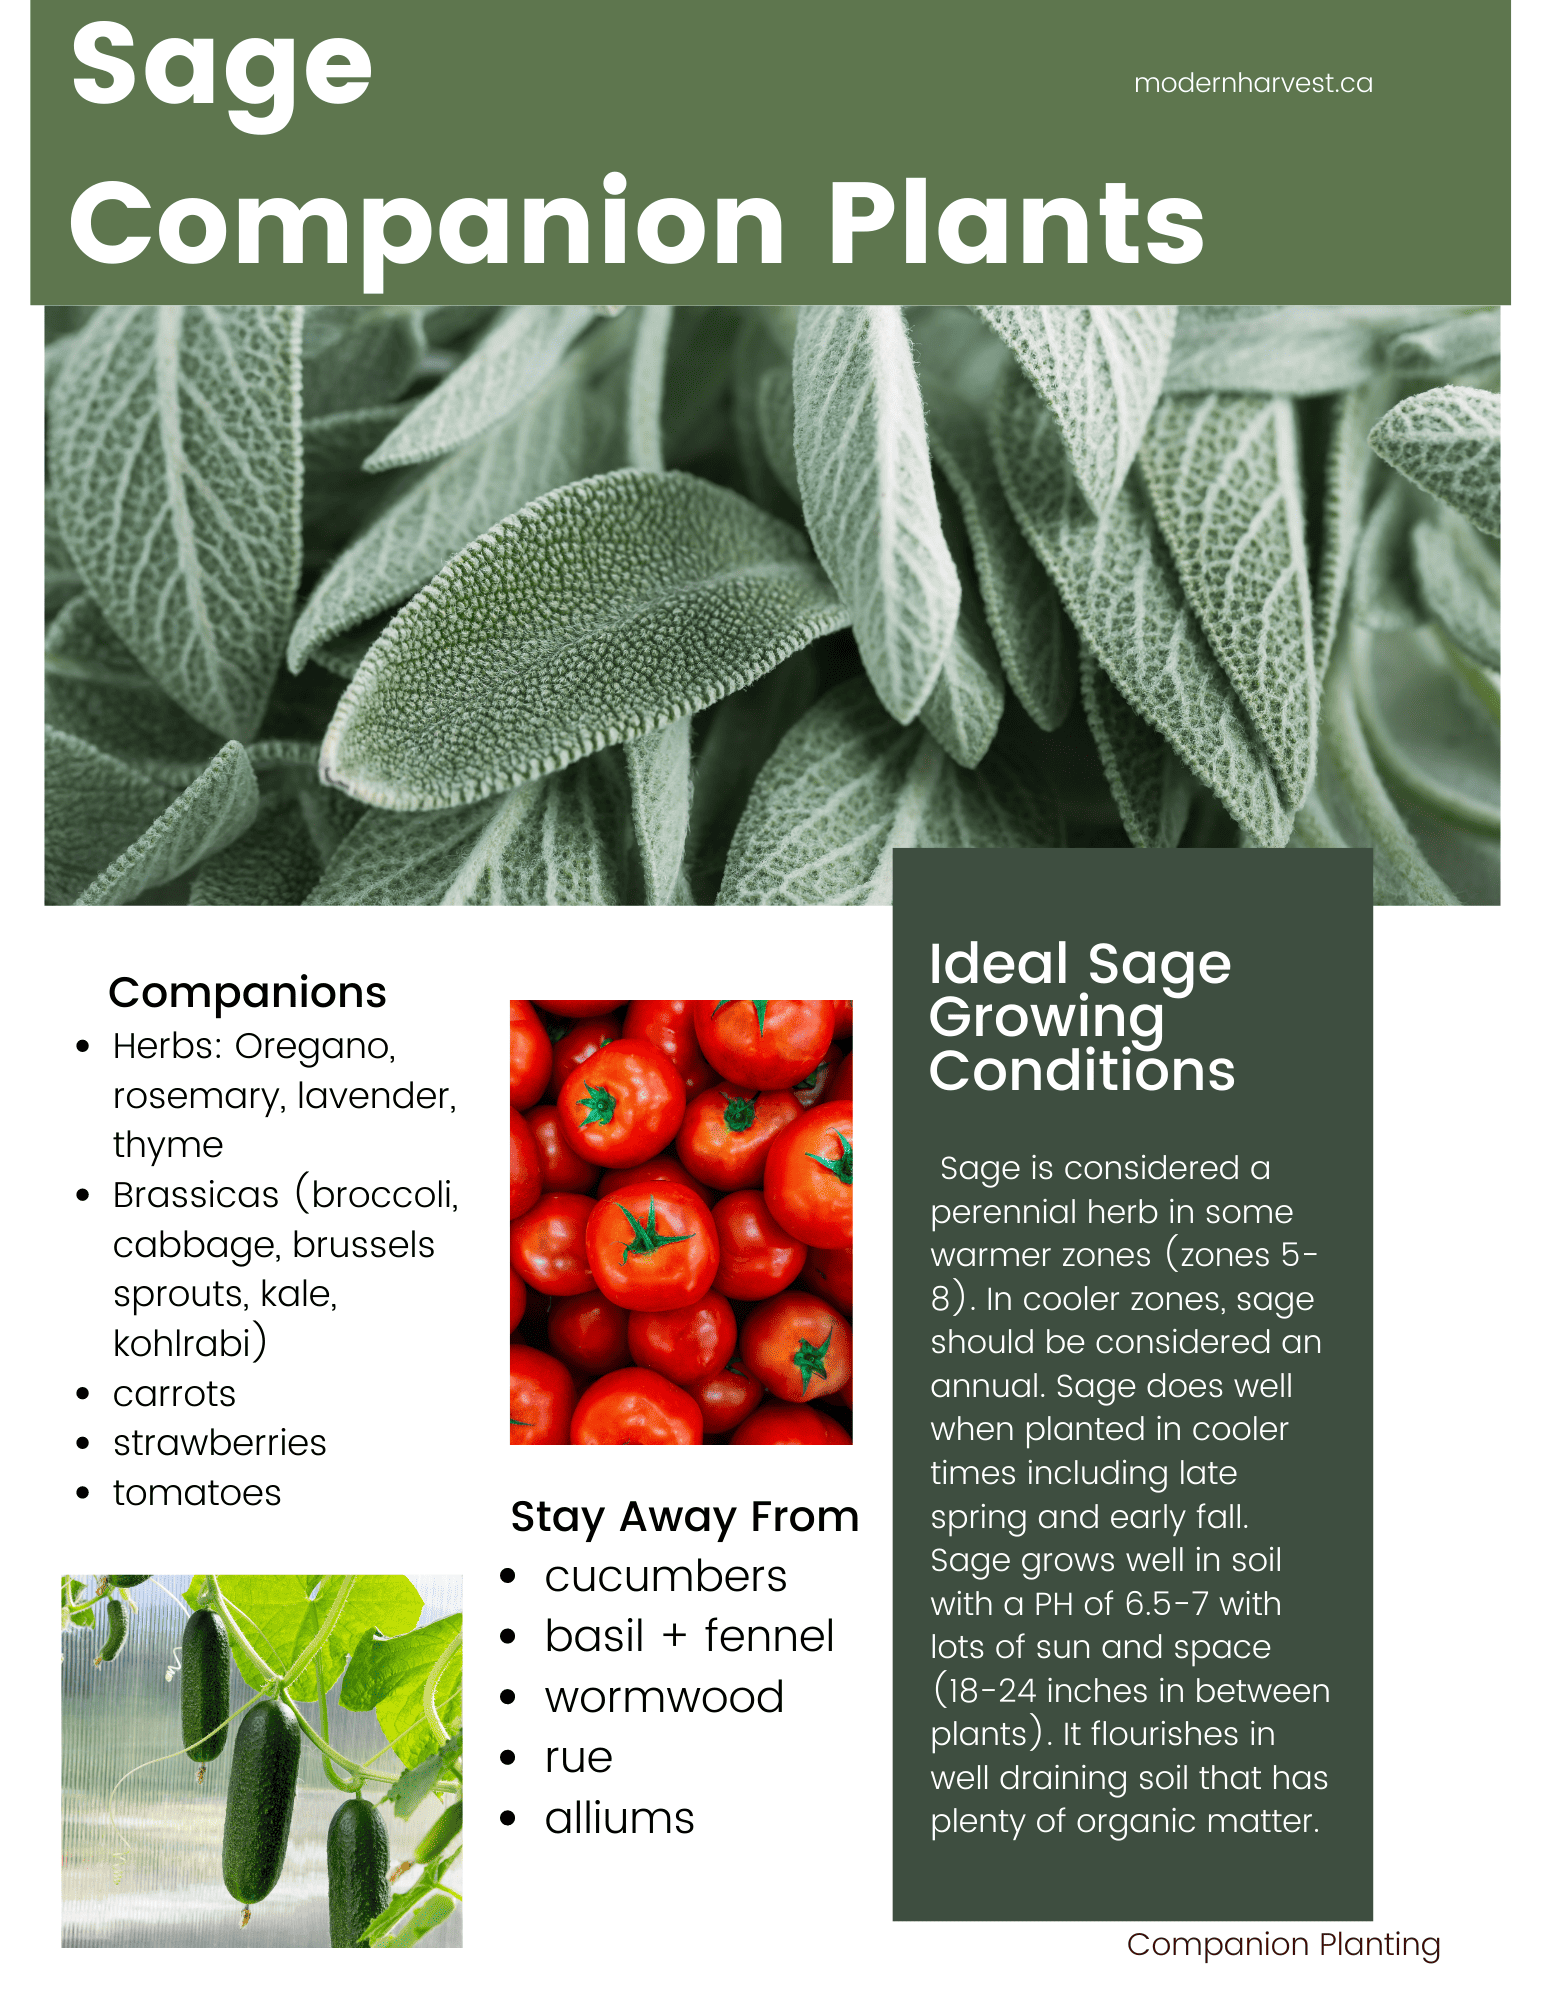 Printable guide for Sage Companion Plants